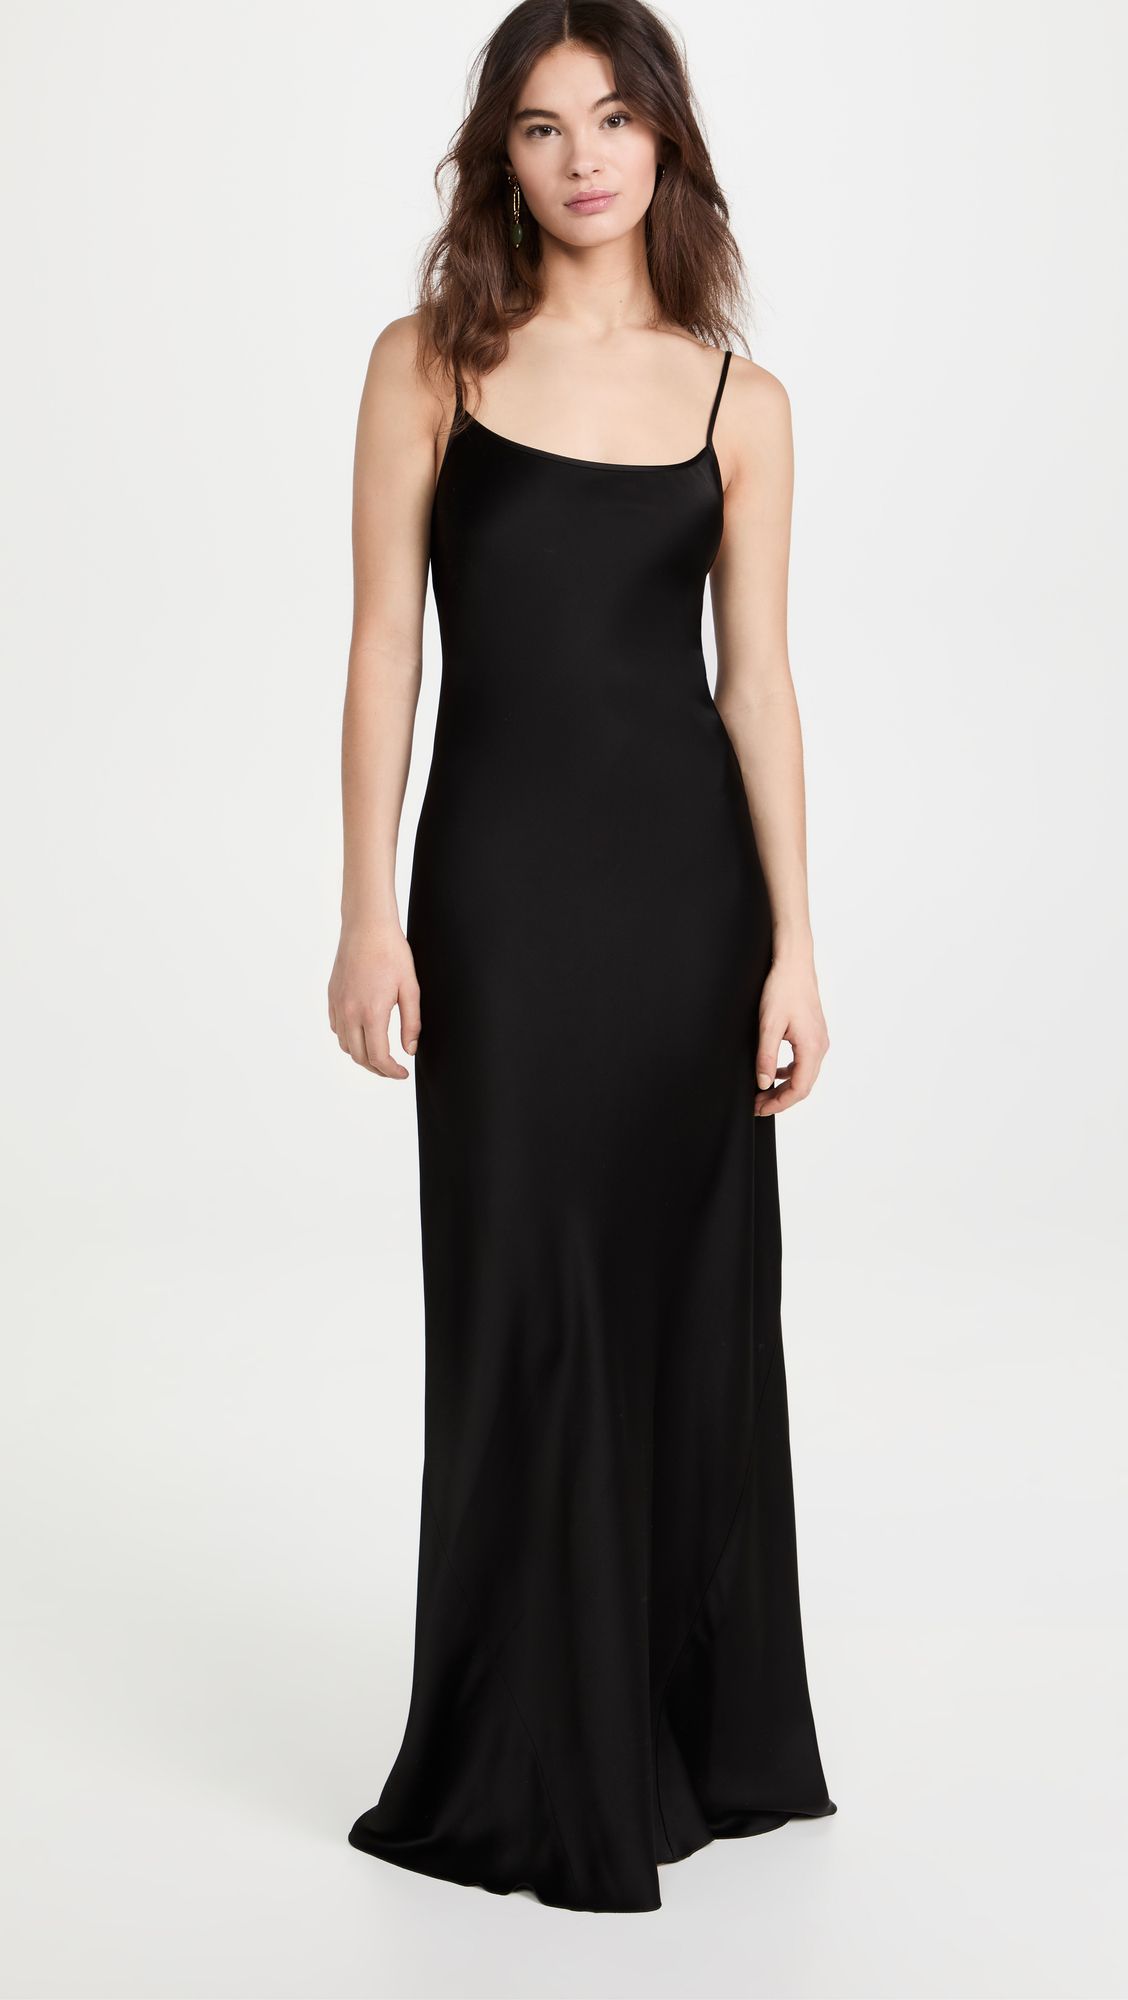 Cami Floor Length Dress | Shopbop